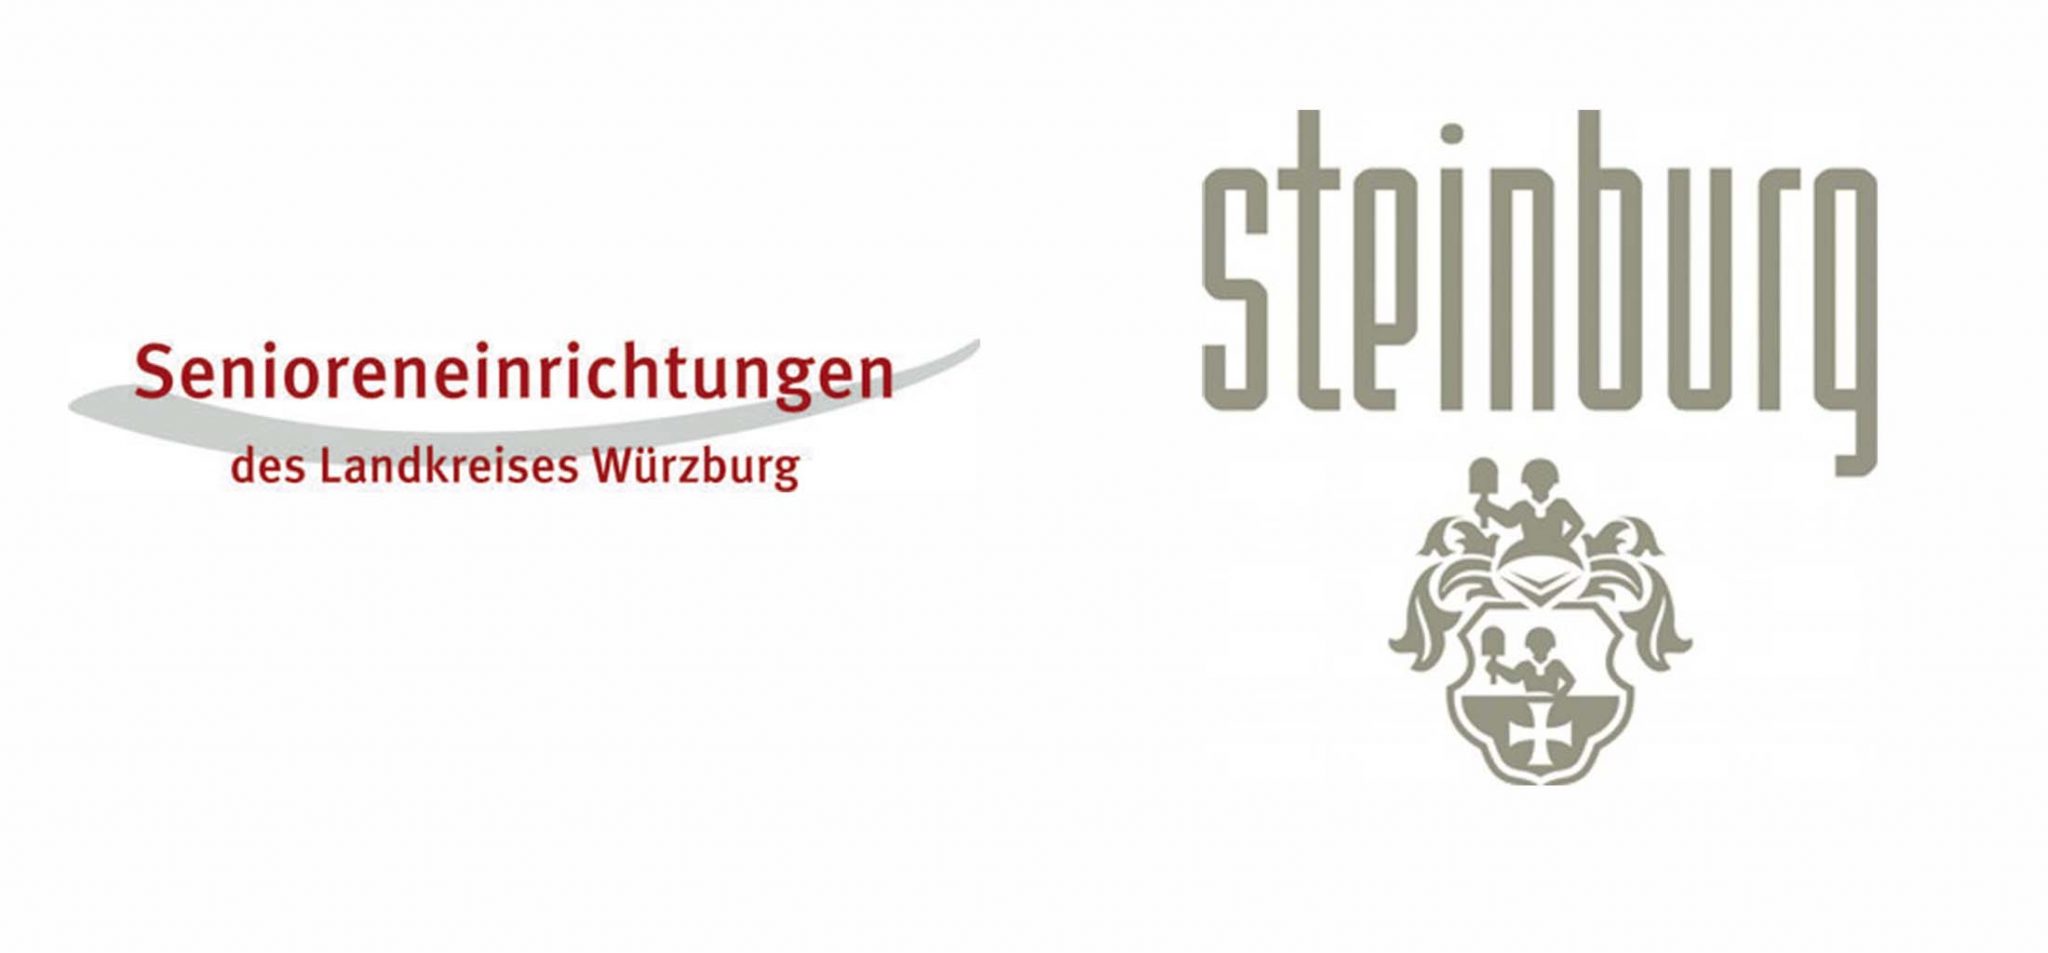 Schlosshotel Steinburg Senioreneinrichtungen des Landkreises Würzburg gGmbH Stellenanzeigen Textseminar Agentur Würzburg Logo